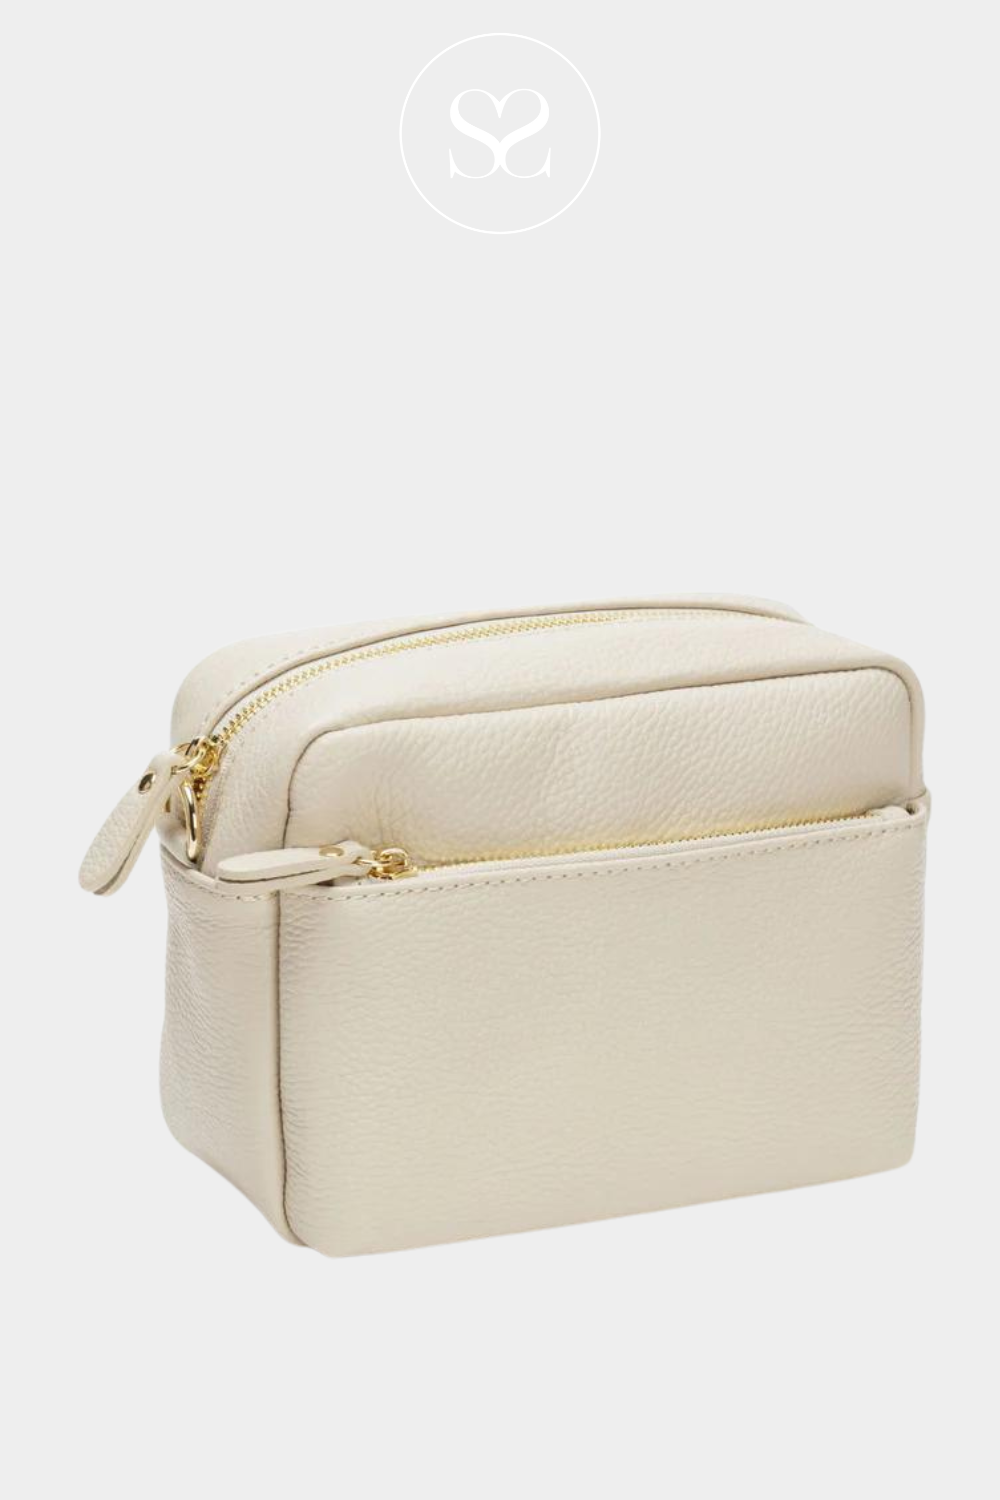 Neutral light colour handbag for everyday